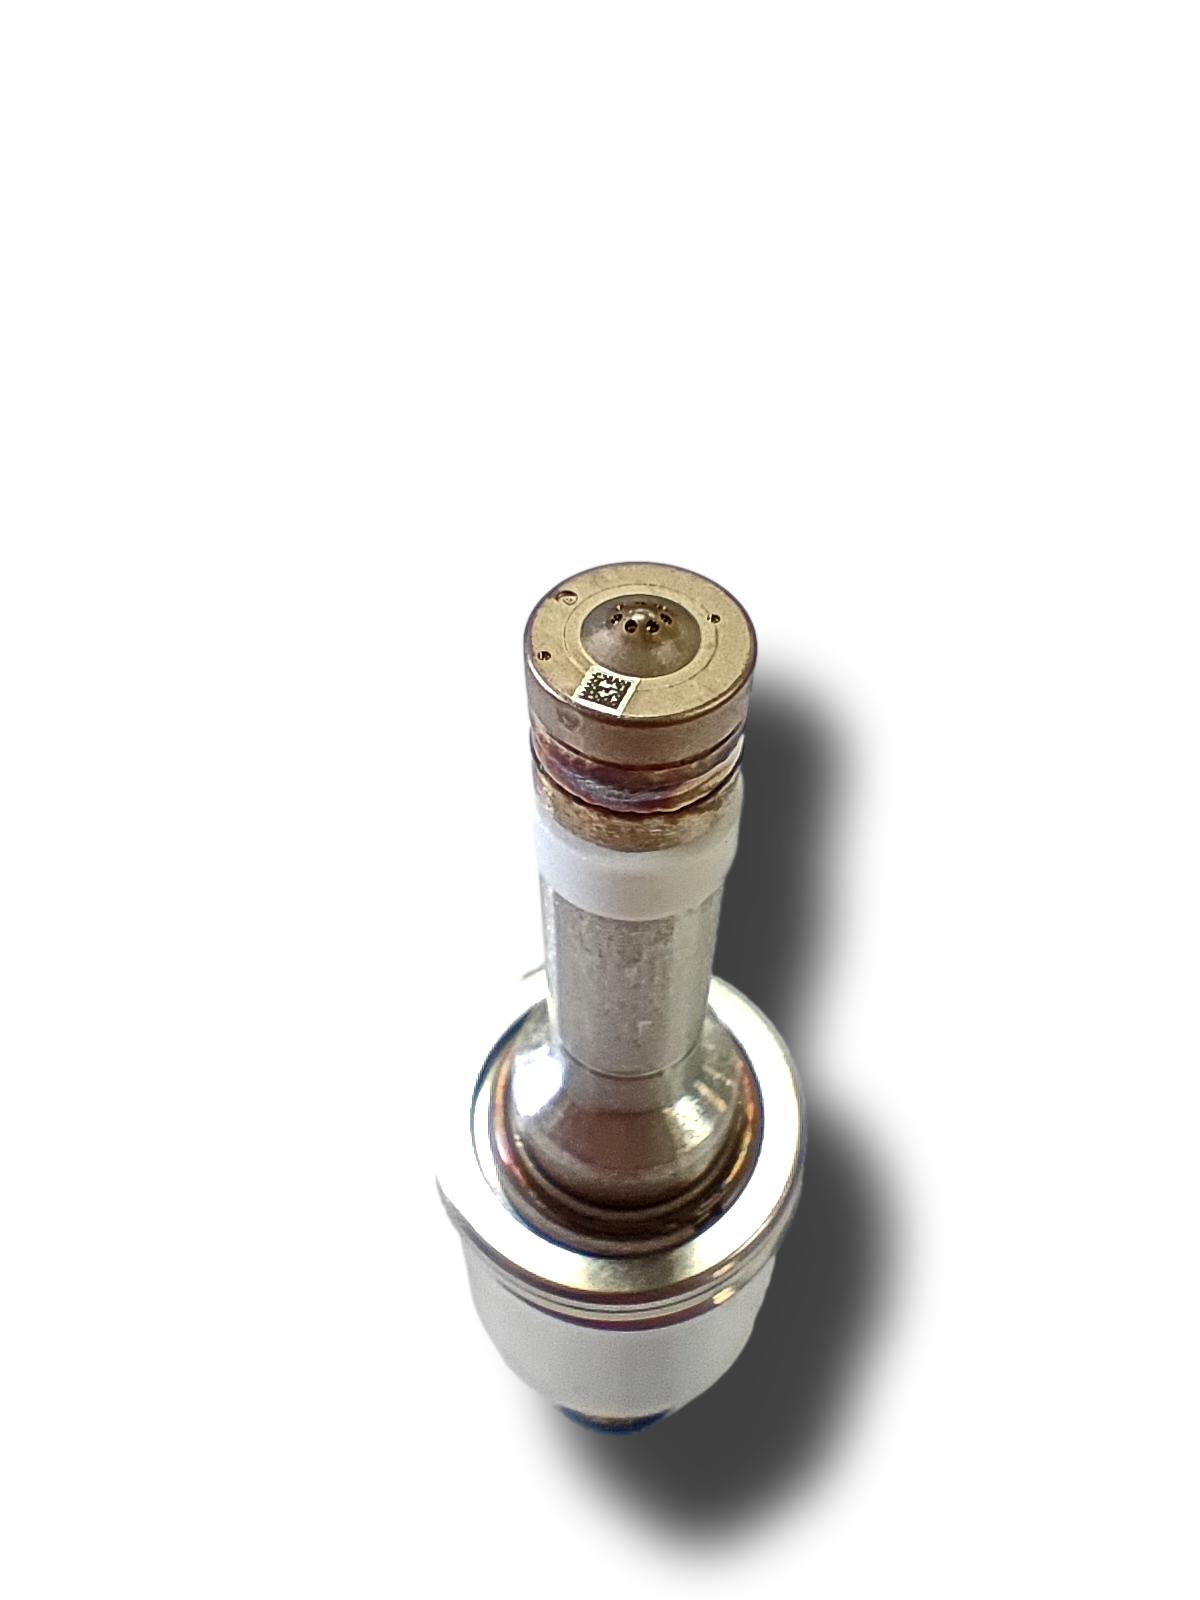 Nissan X Trail Petrol Injector 2.0 2014-16 166001VA0C 166001KC0A (#28032024)